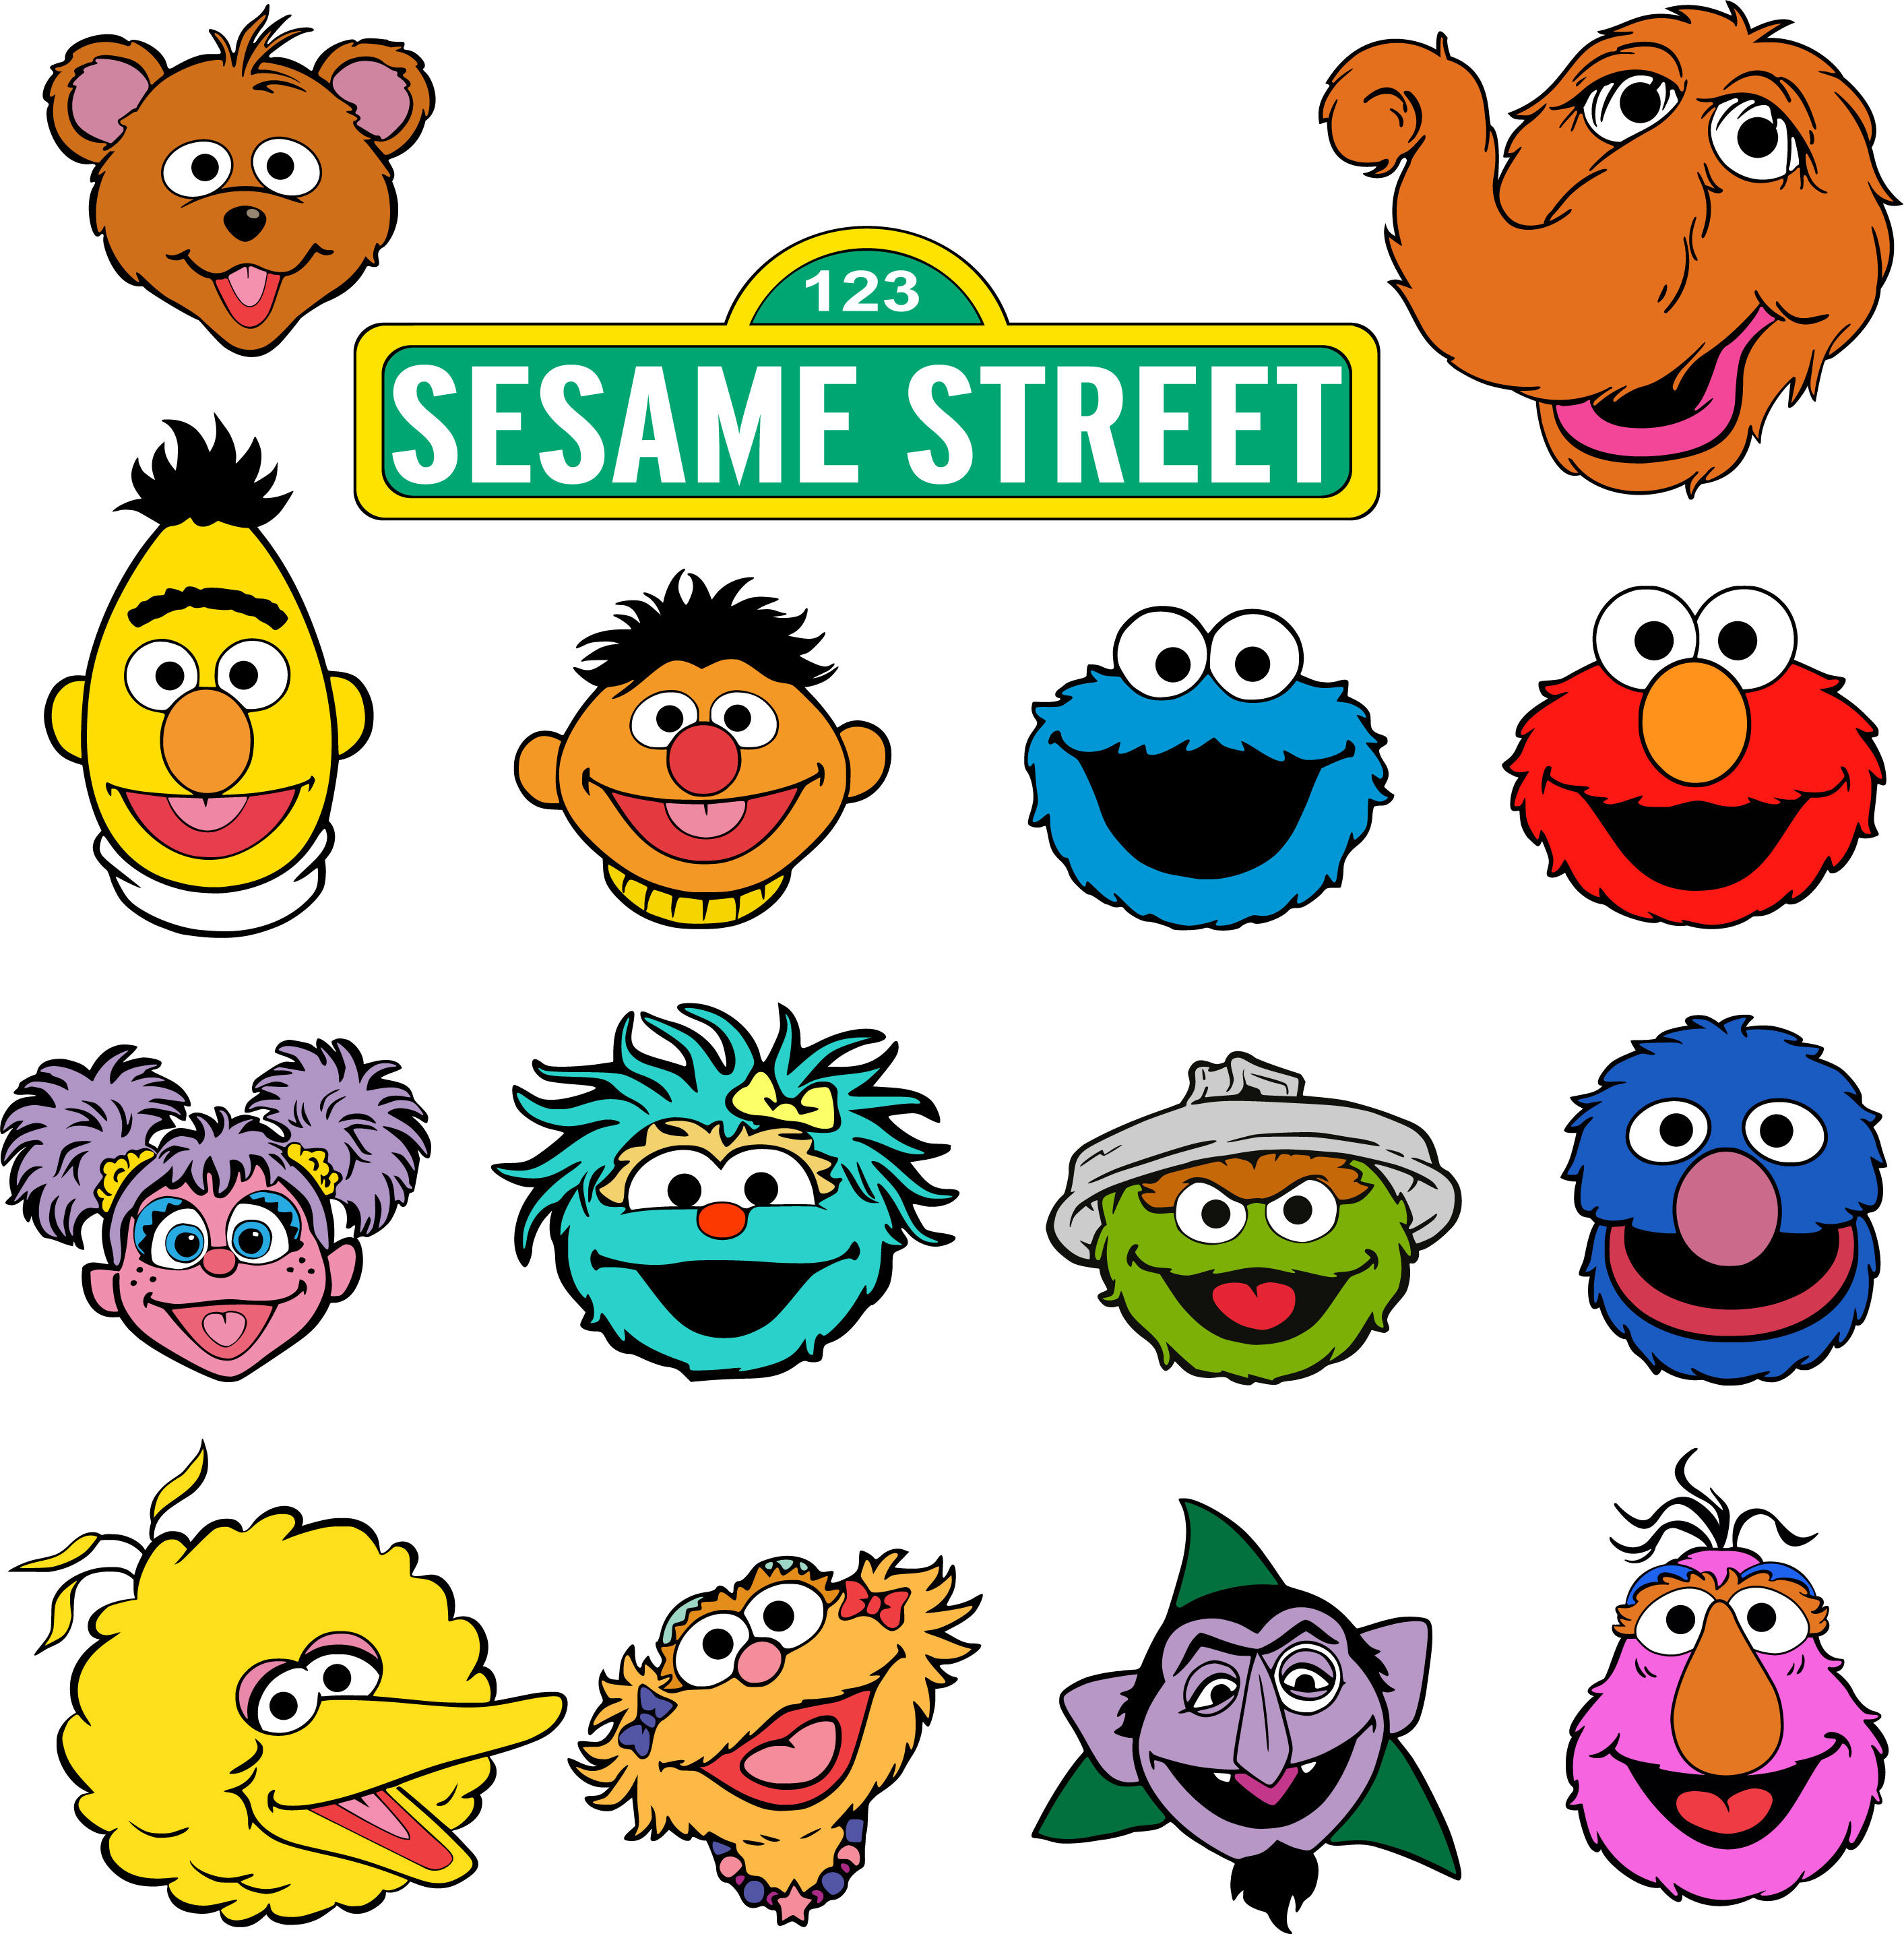 Download Sesame Street.Svg.Dfx.Eps.Pdf.Png.JPG.